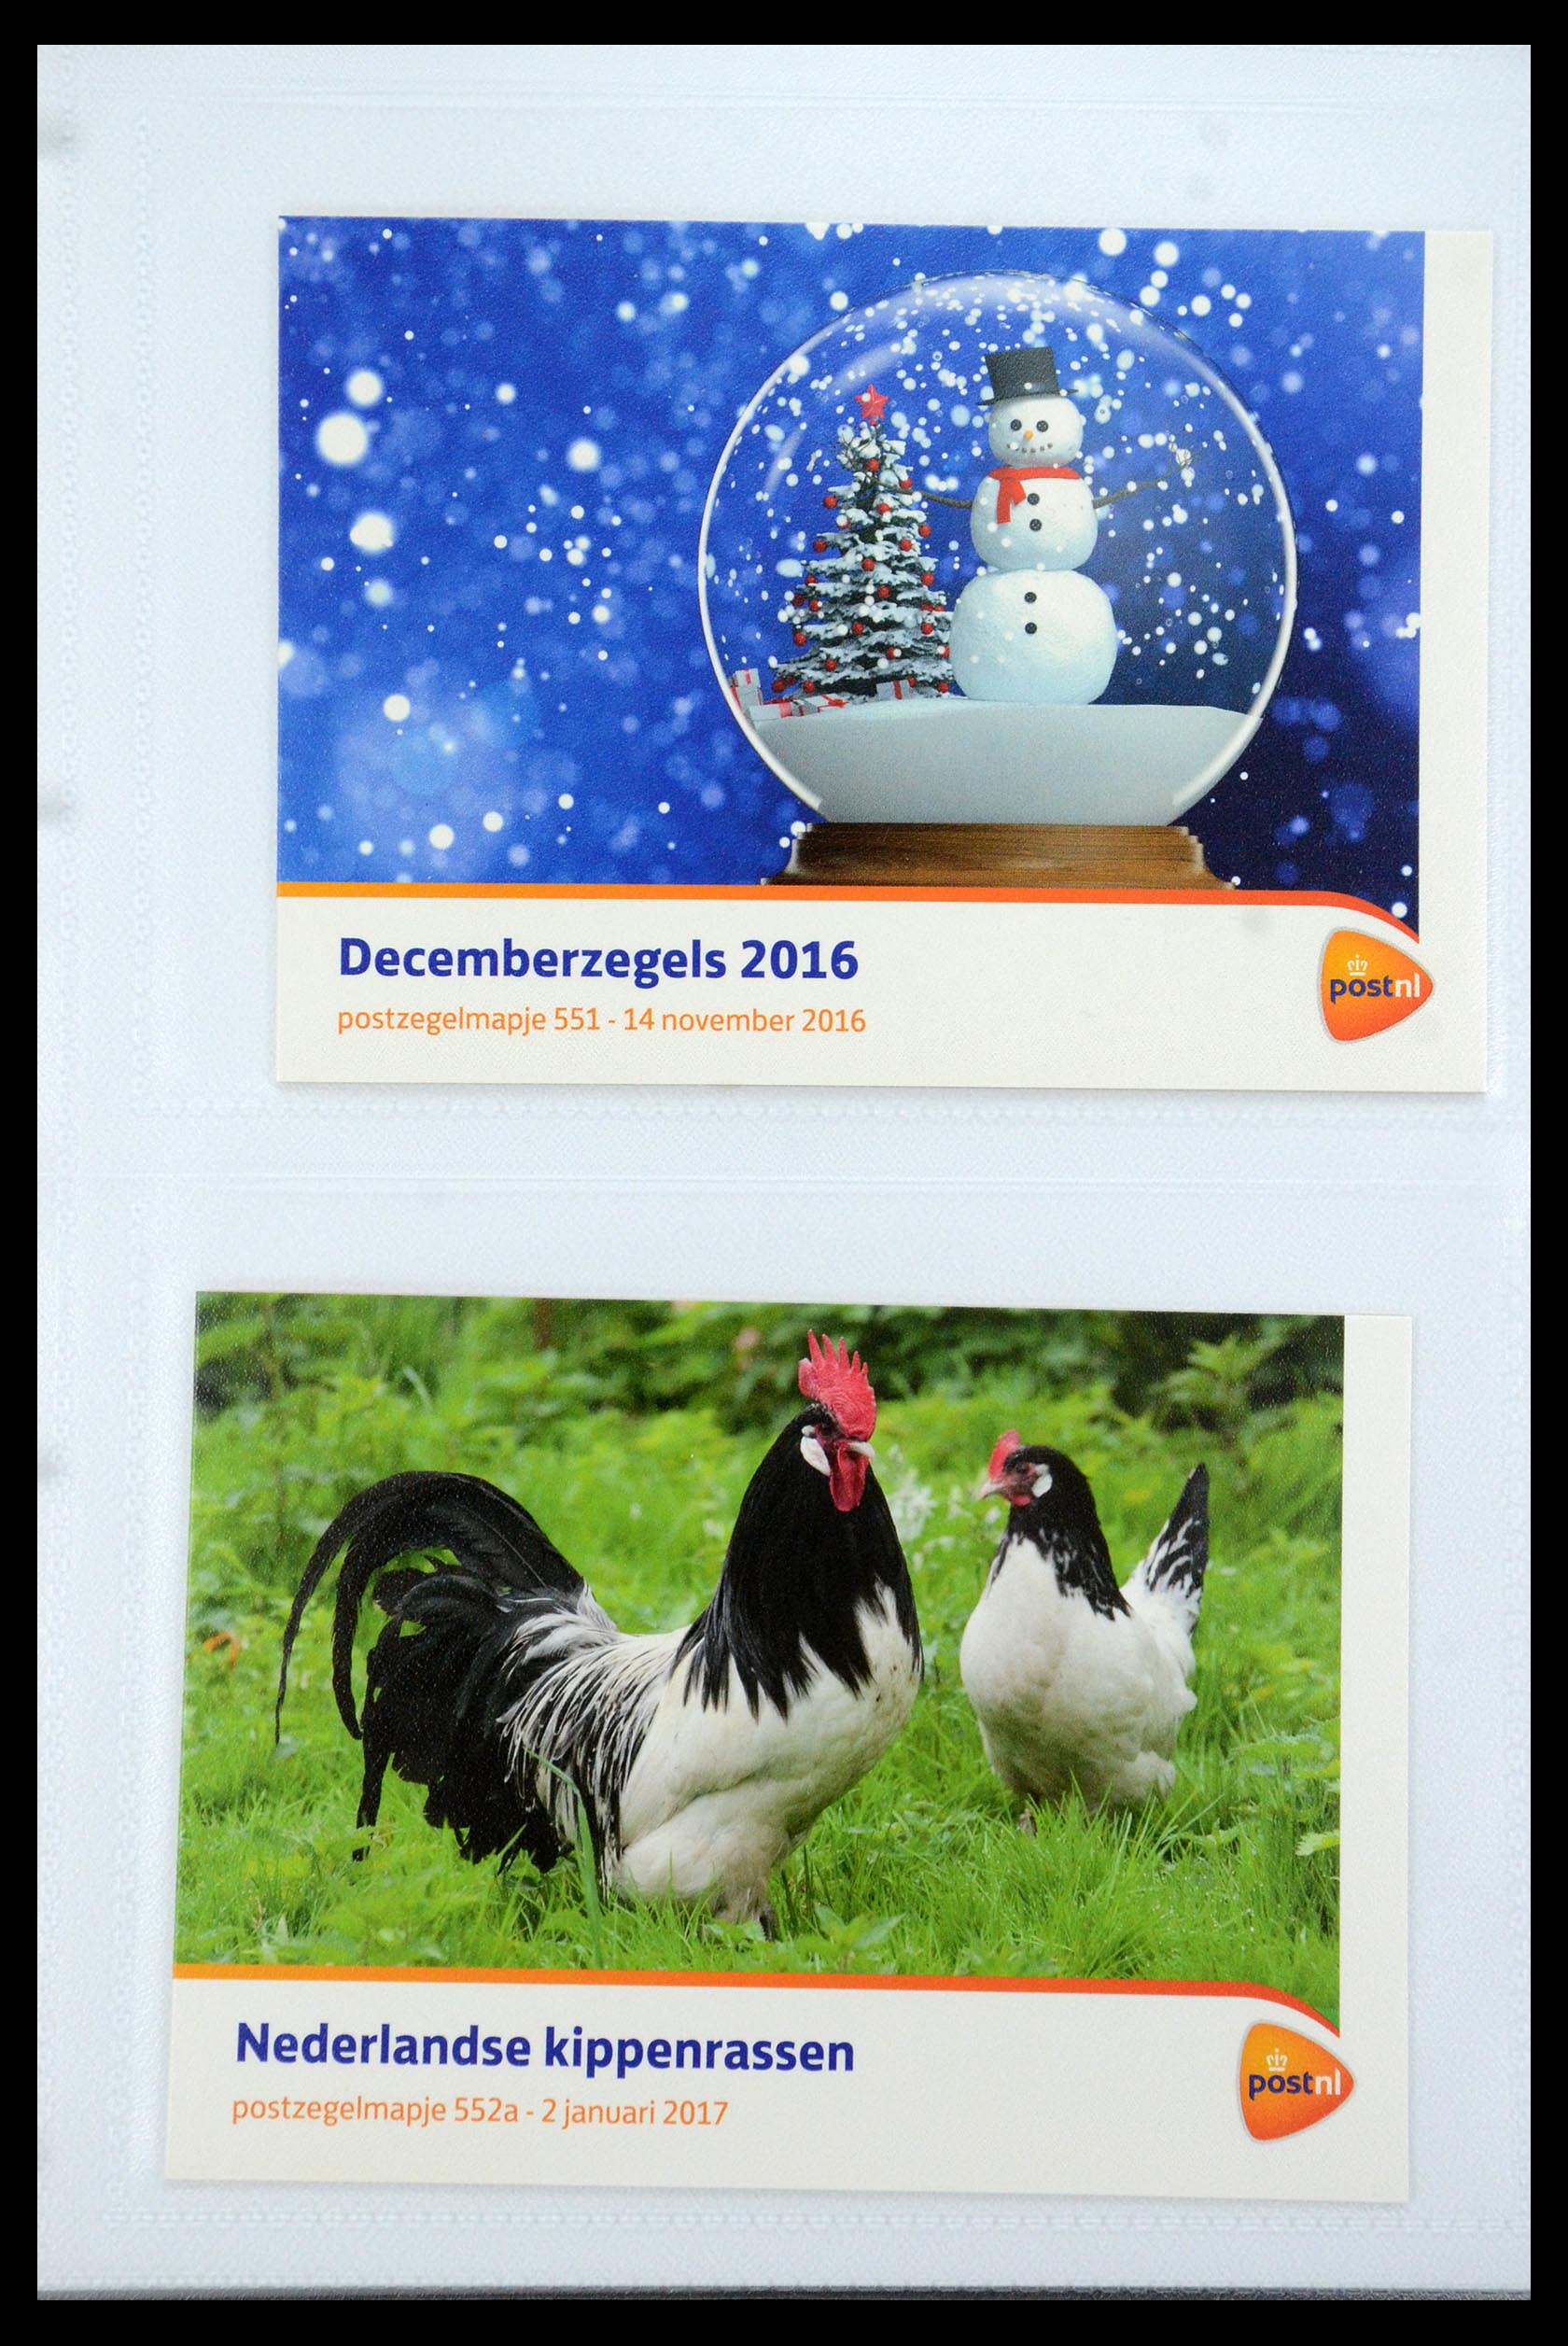 35947 329 - Stamp Collection 35947 Netherlands PTT presentation packs 1982-2019!